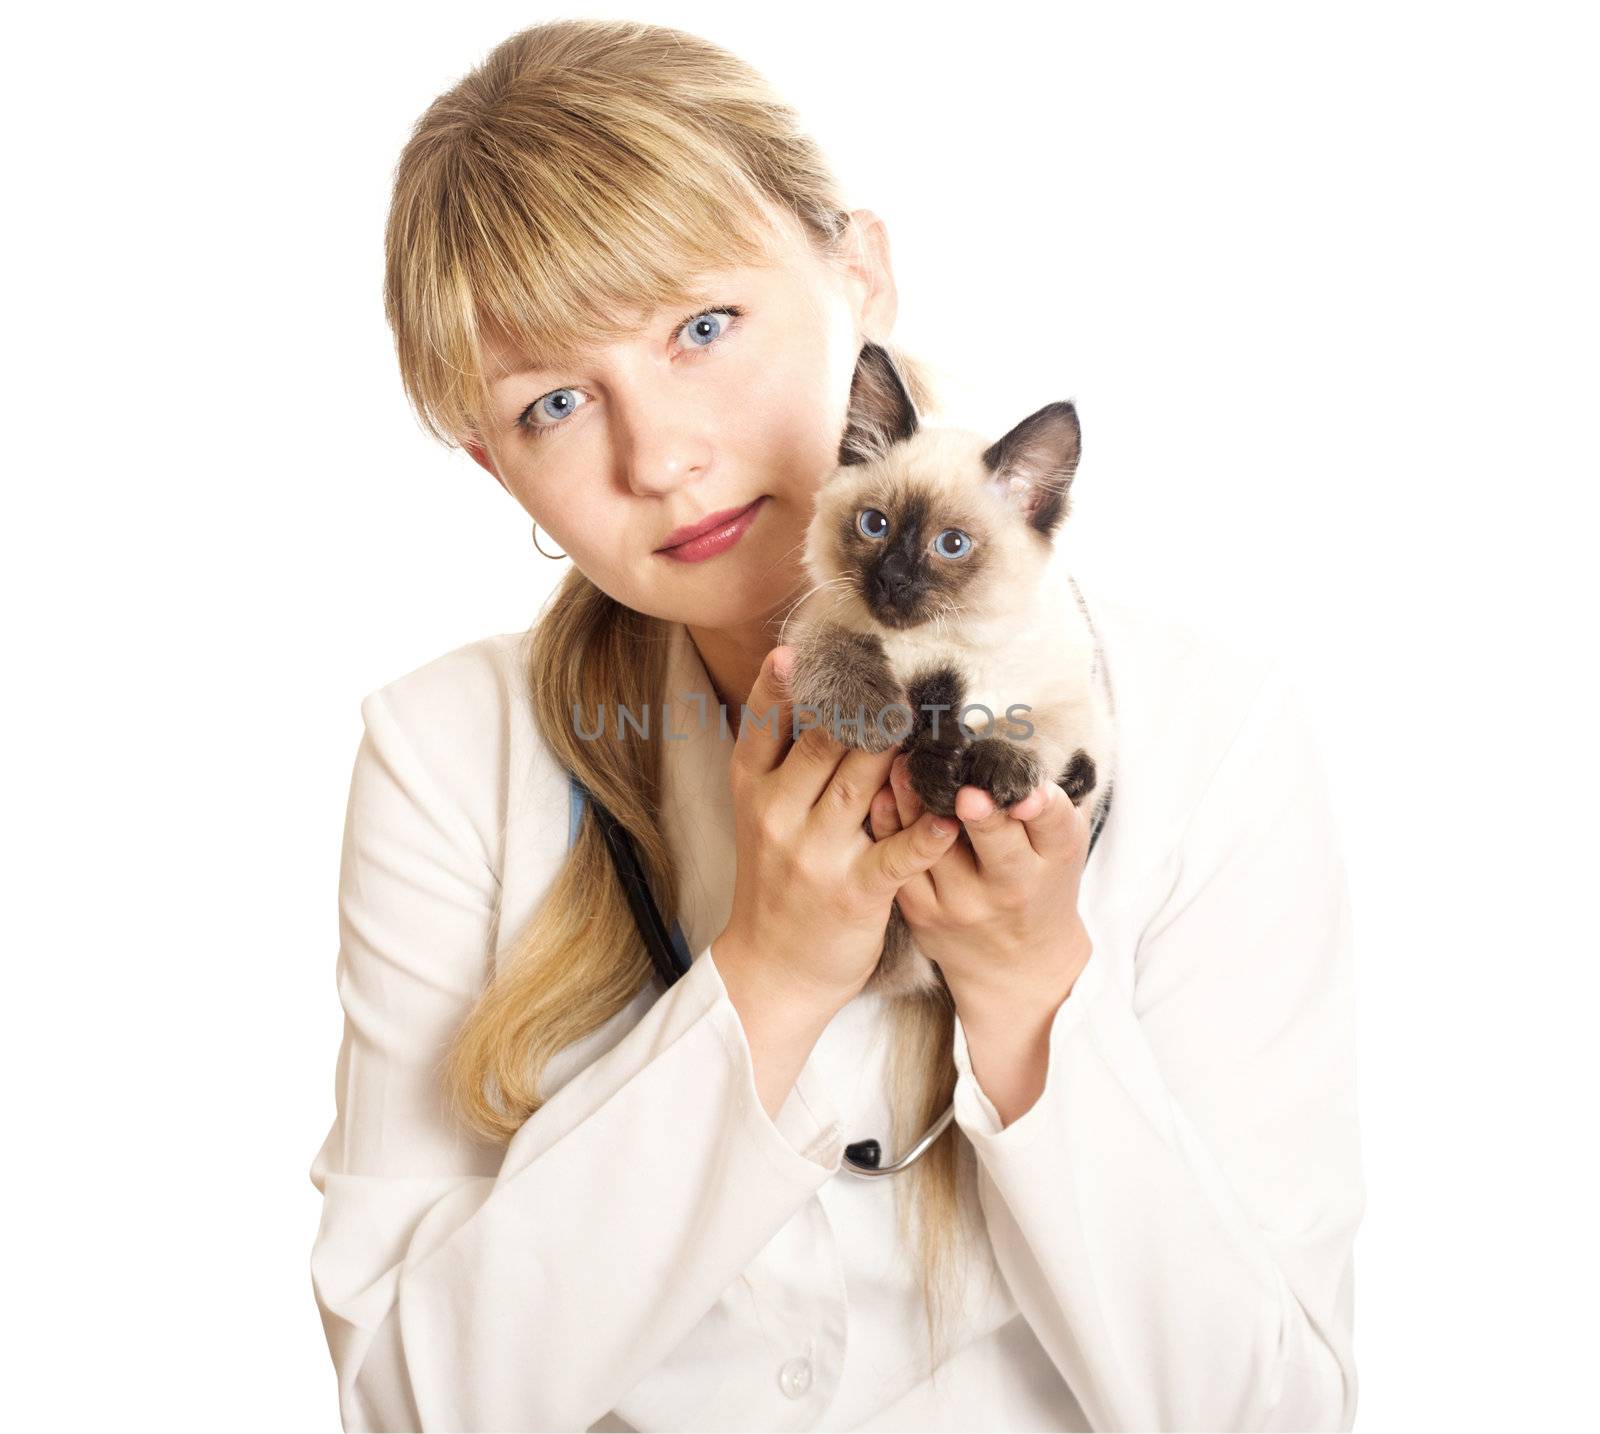 veterinarian holding  kitten by gurin_oleksandr